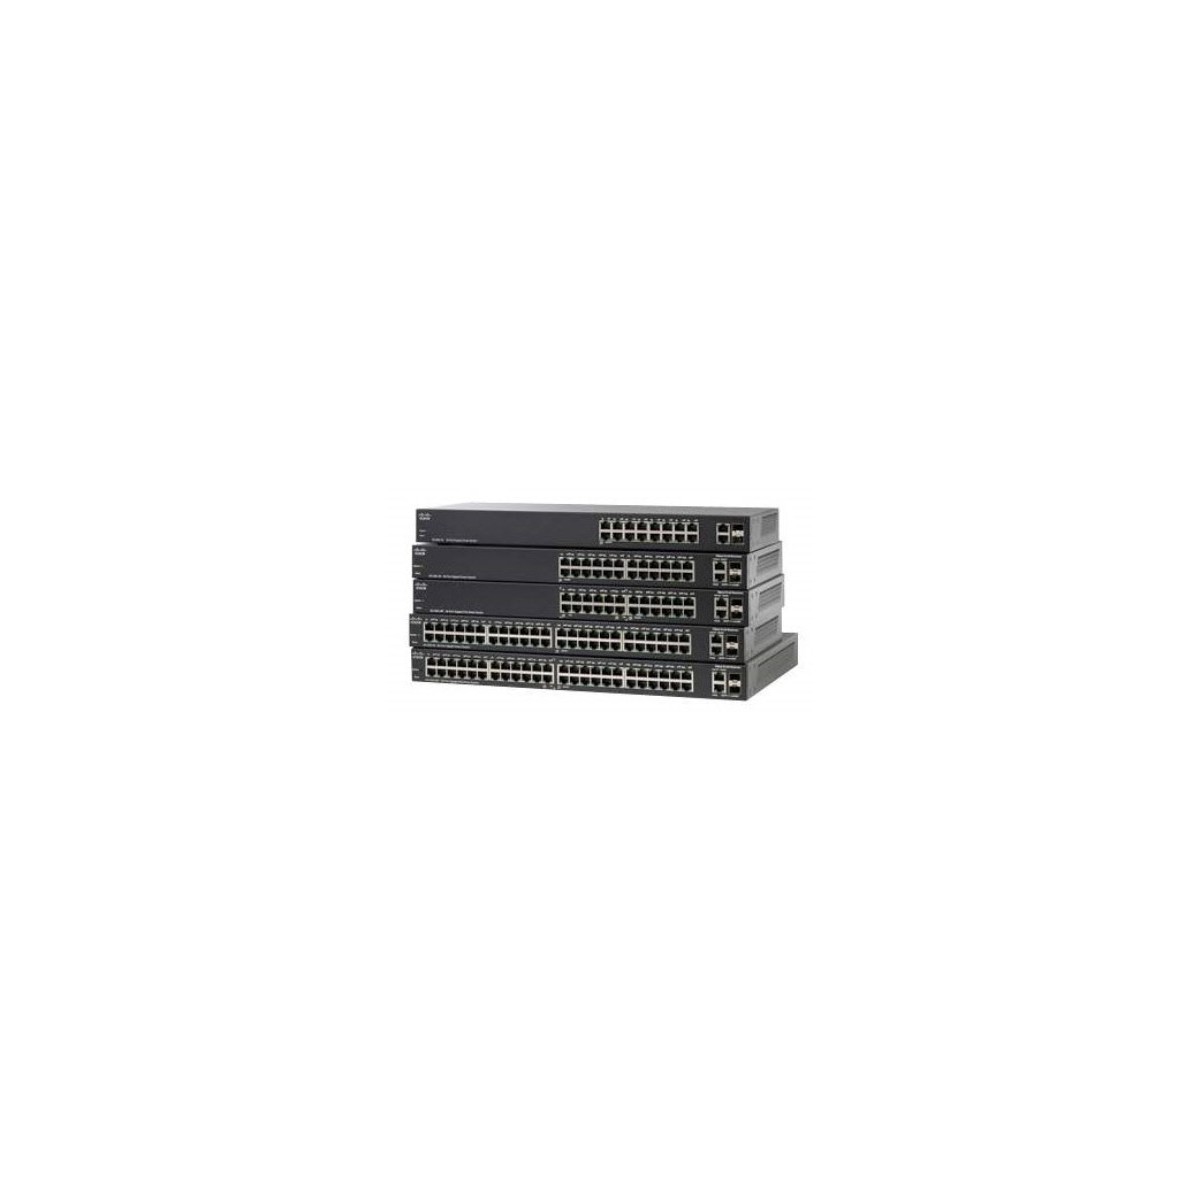 Cisco SLM2024PT - Managed - Gigabit Ethernet (10/100/1000) - Power over Ethernet (PoE)